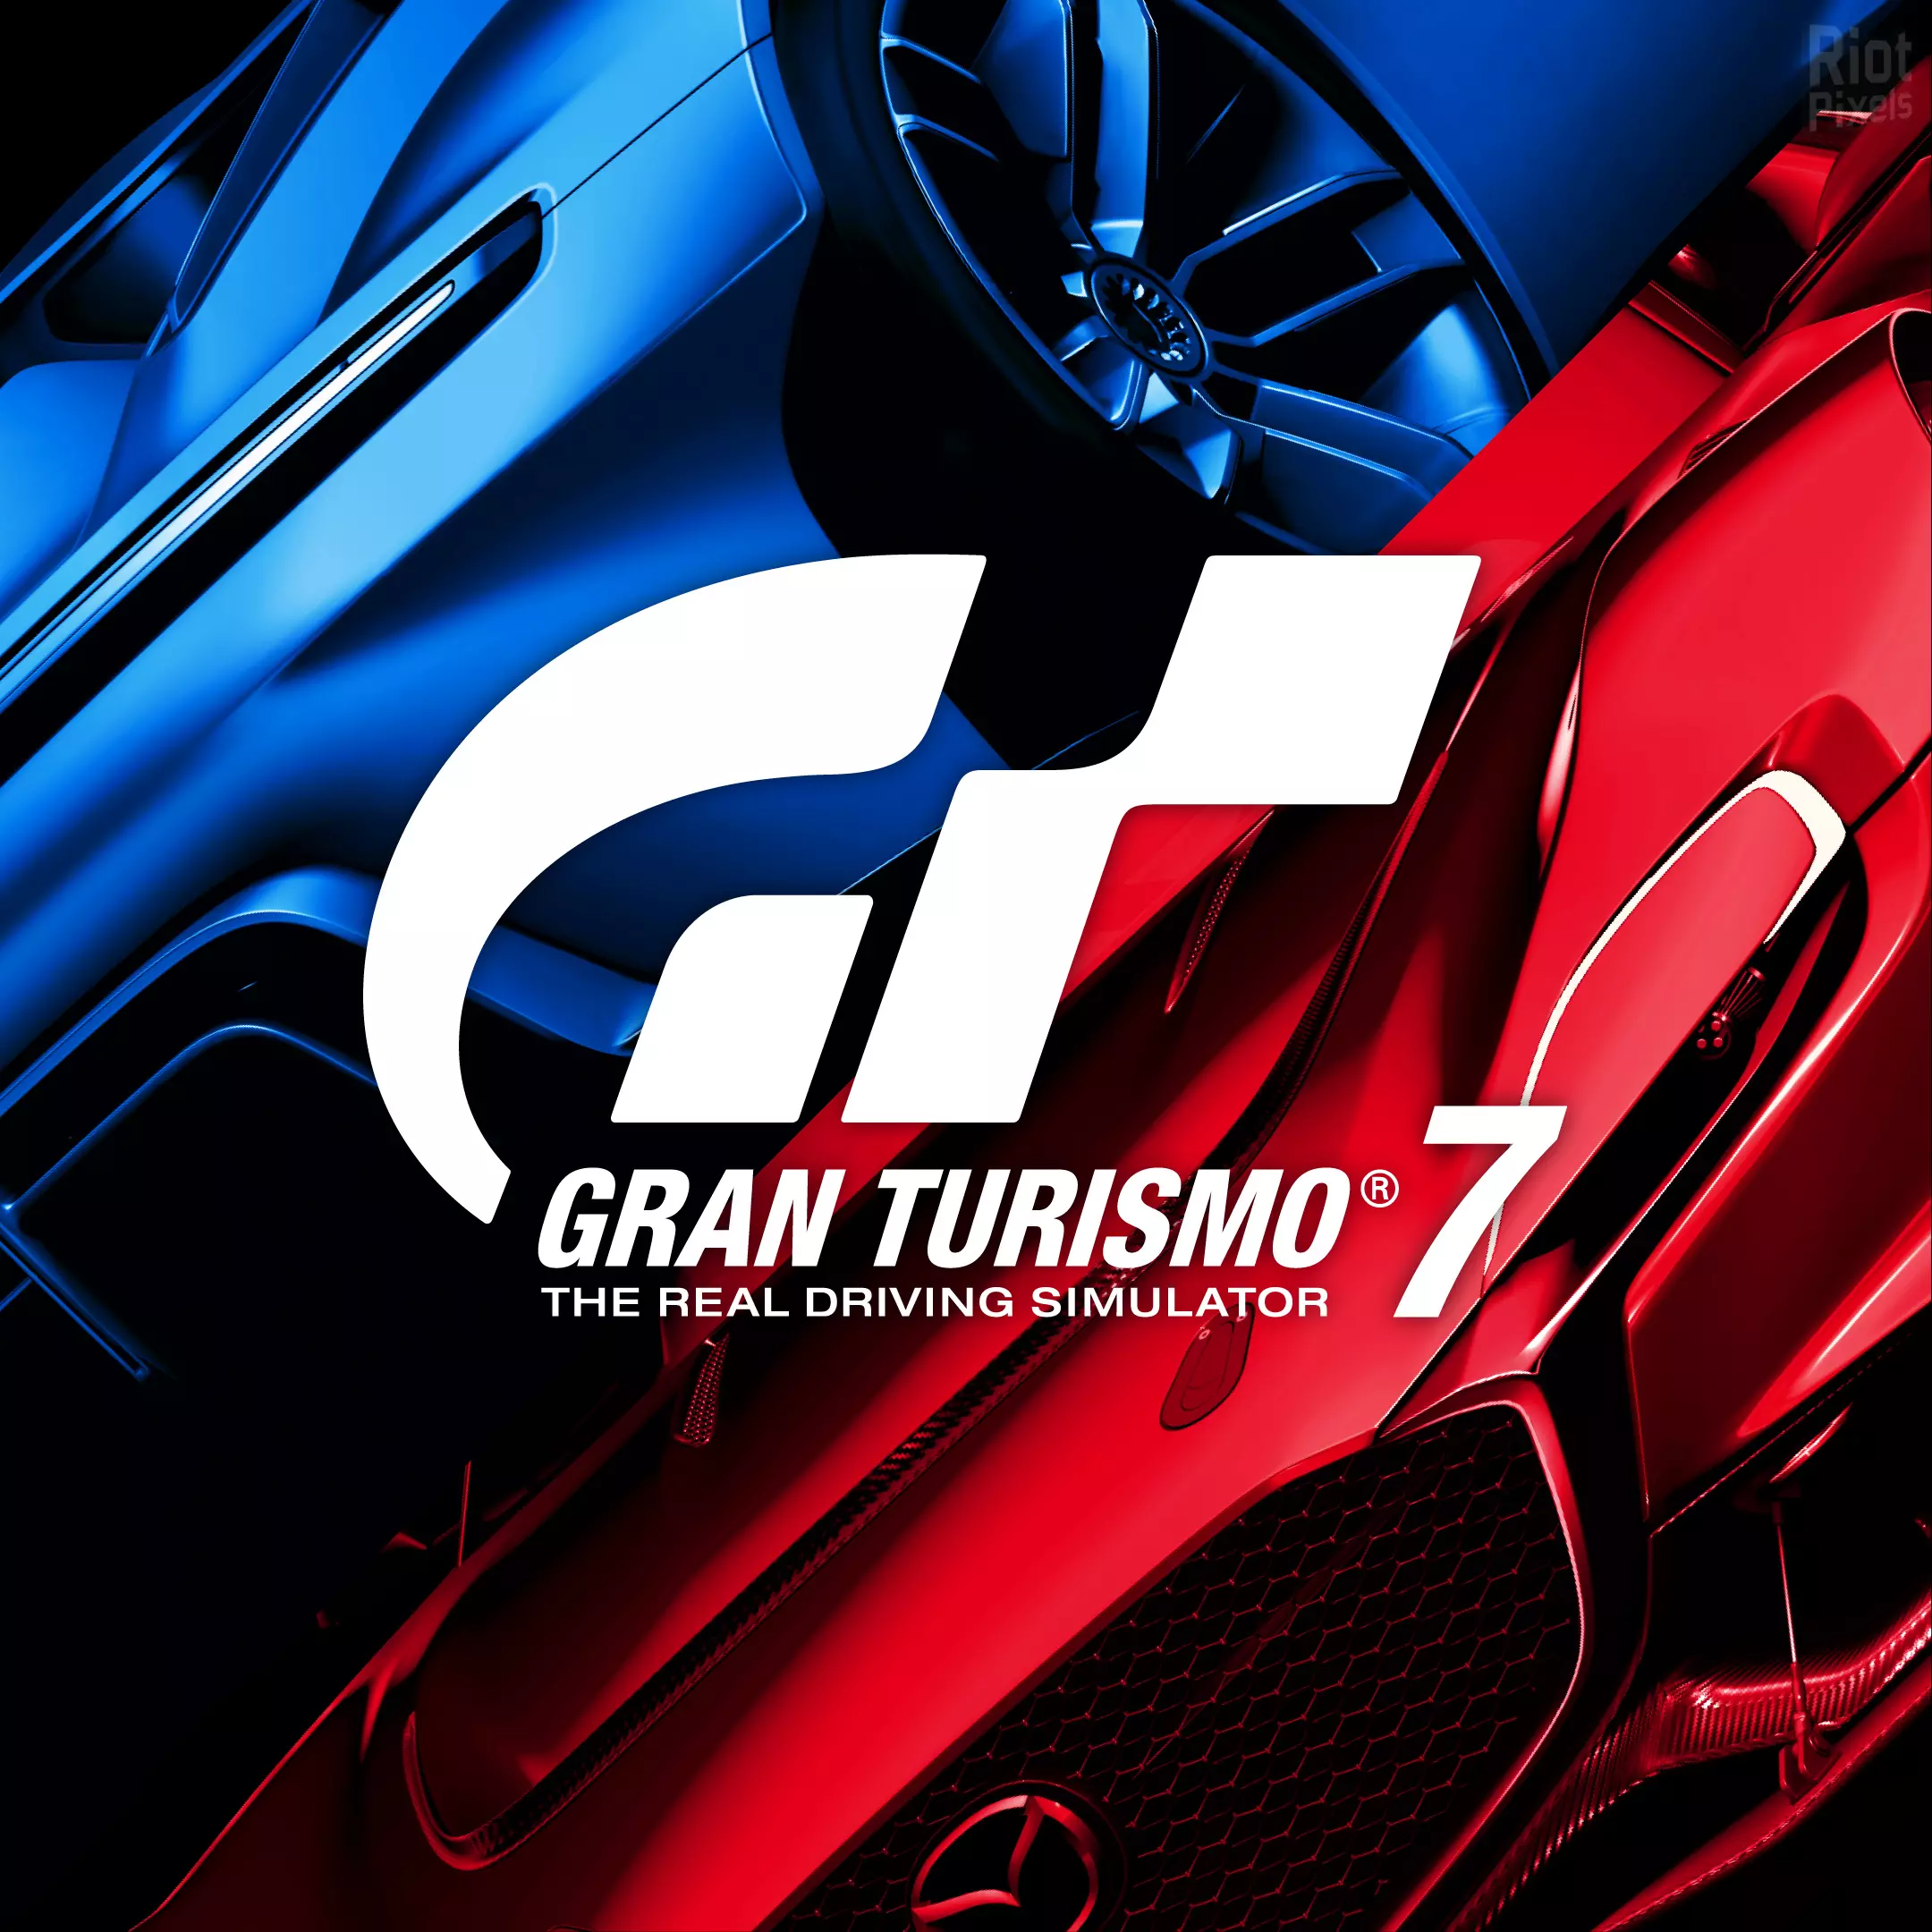 Gran Turismo 7 - это предстоящая гоночная видеоигра, разработанная Polyphony Digital и изданная Sony Interactive Entertainment.